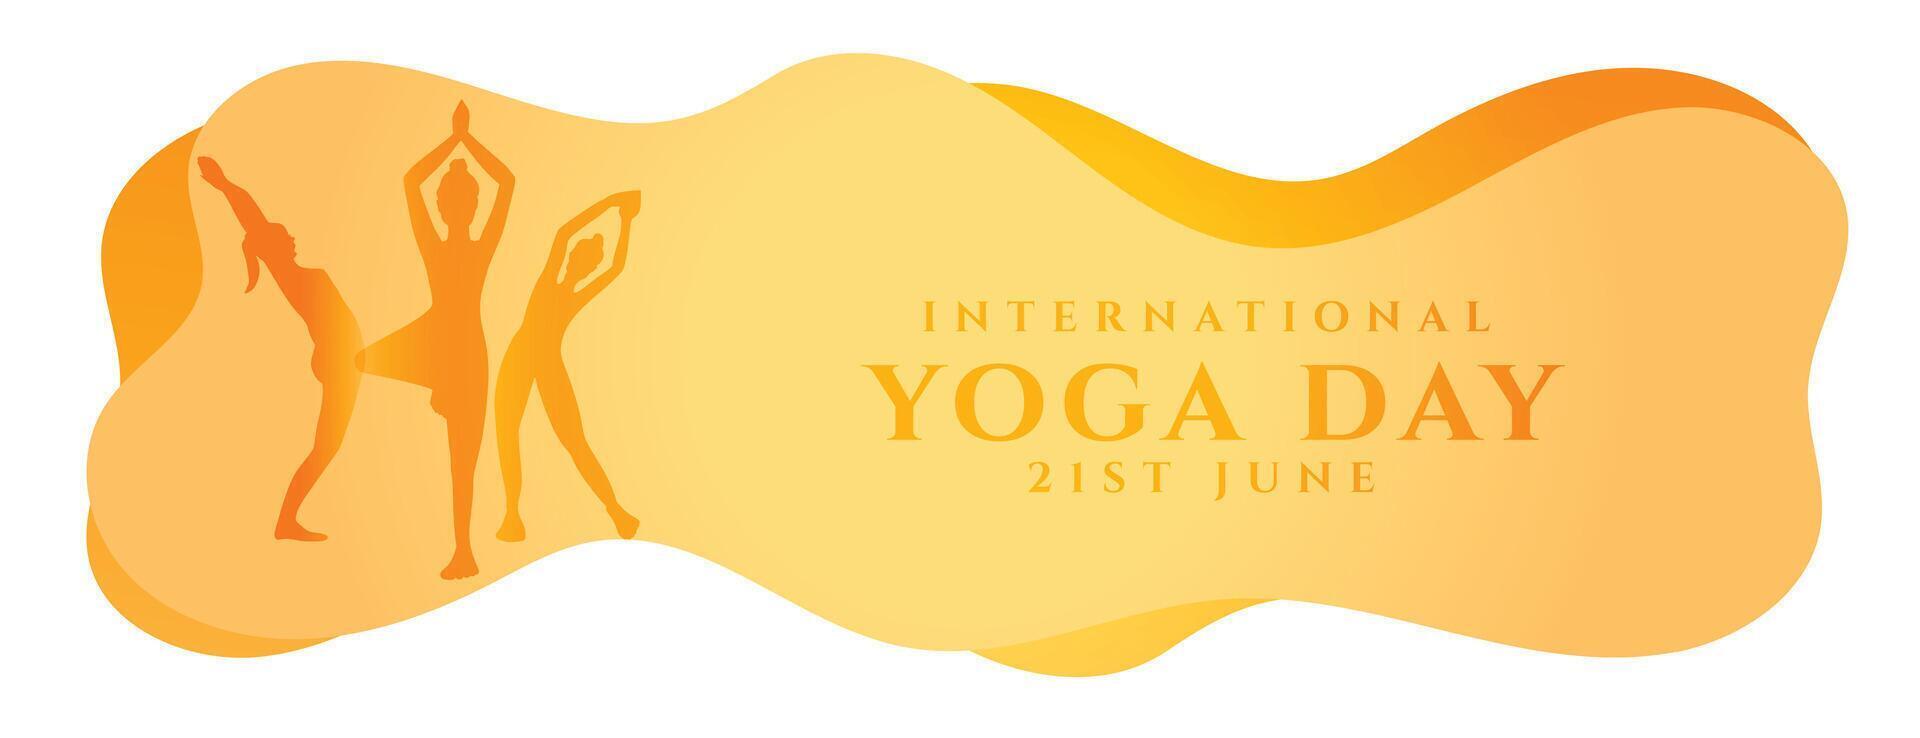 kreativ International Yoga Tag Banner zum glücklich und balancieren Leben vektor